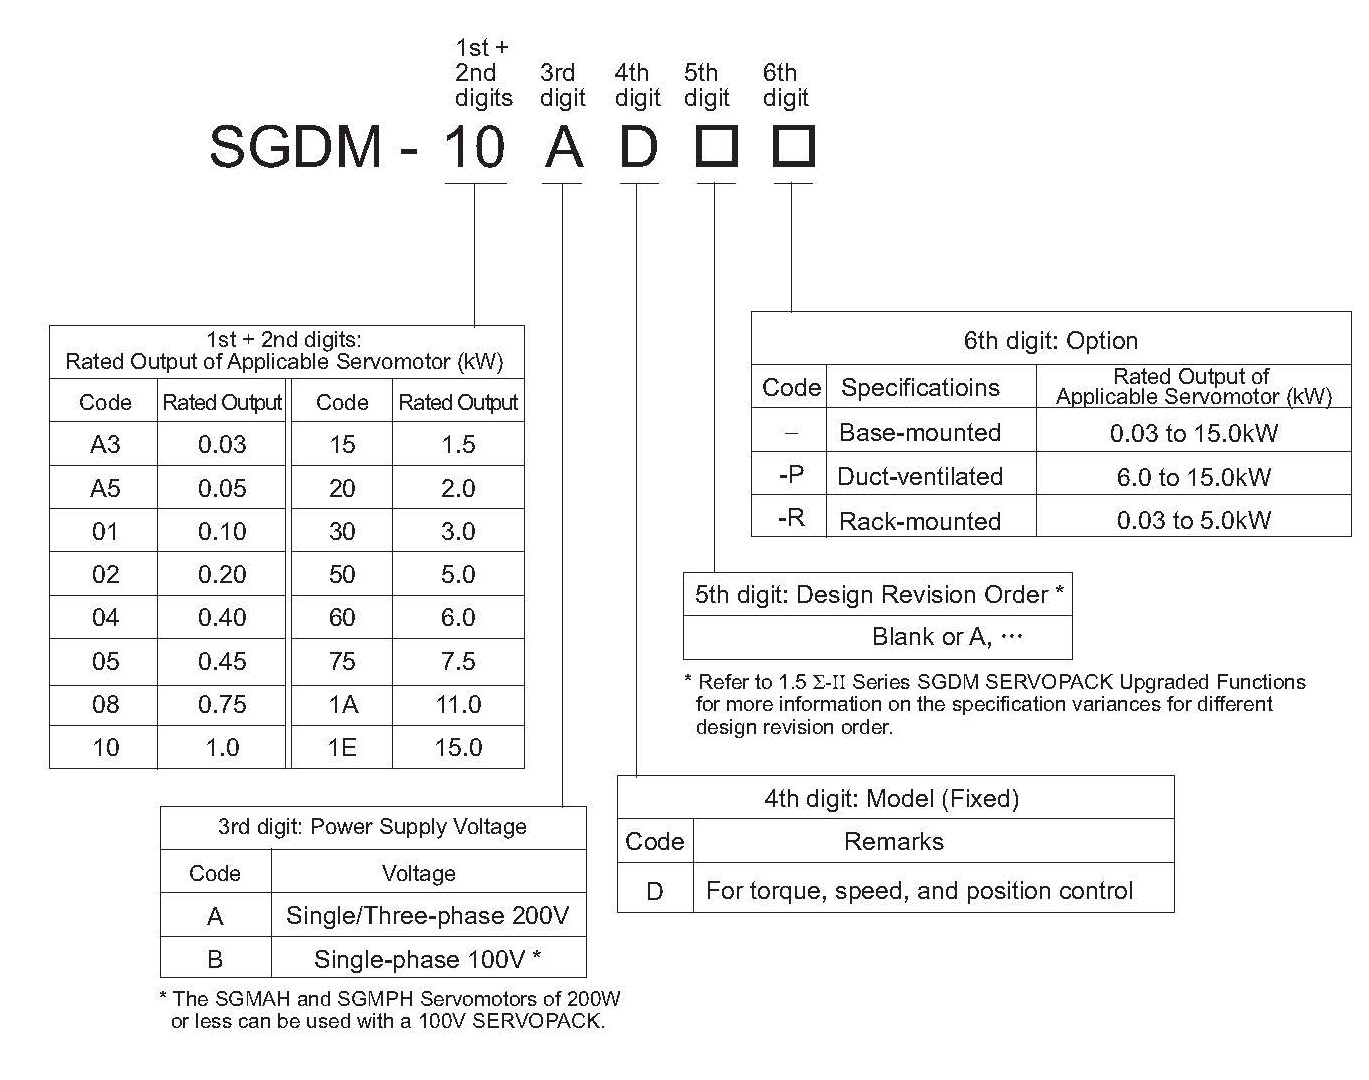 SGDM-04ADA-Y360 spec